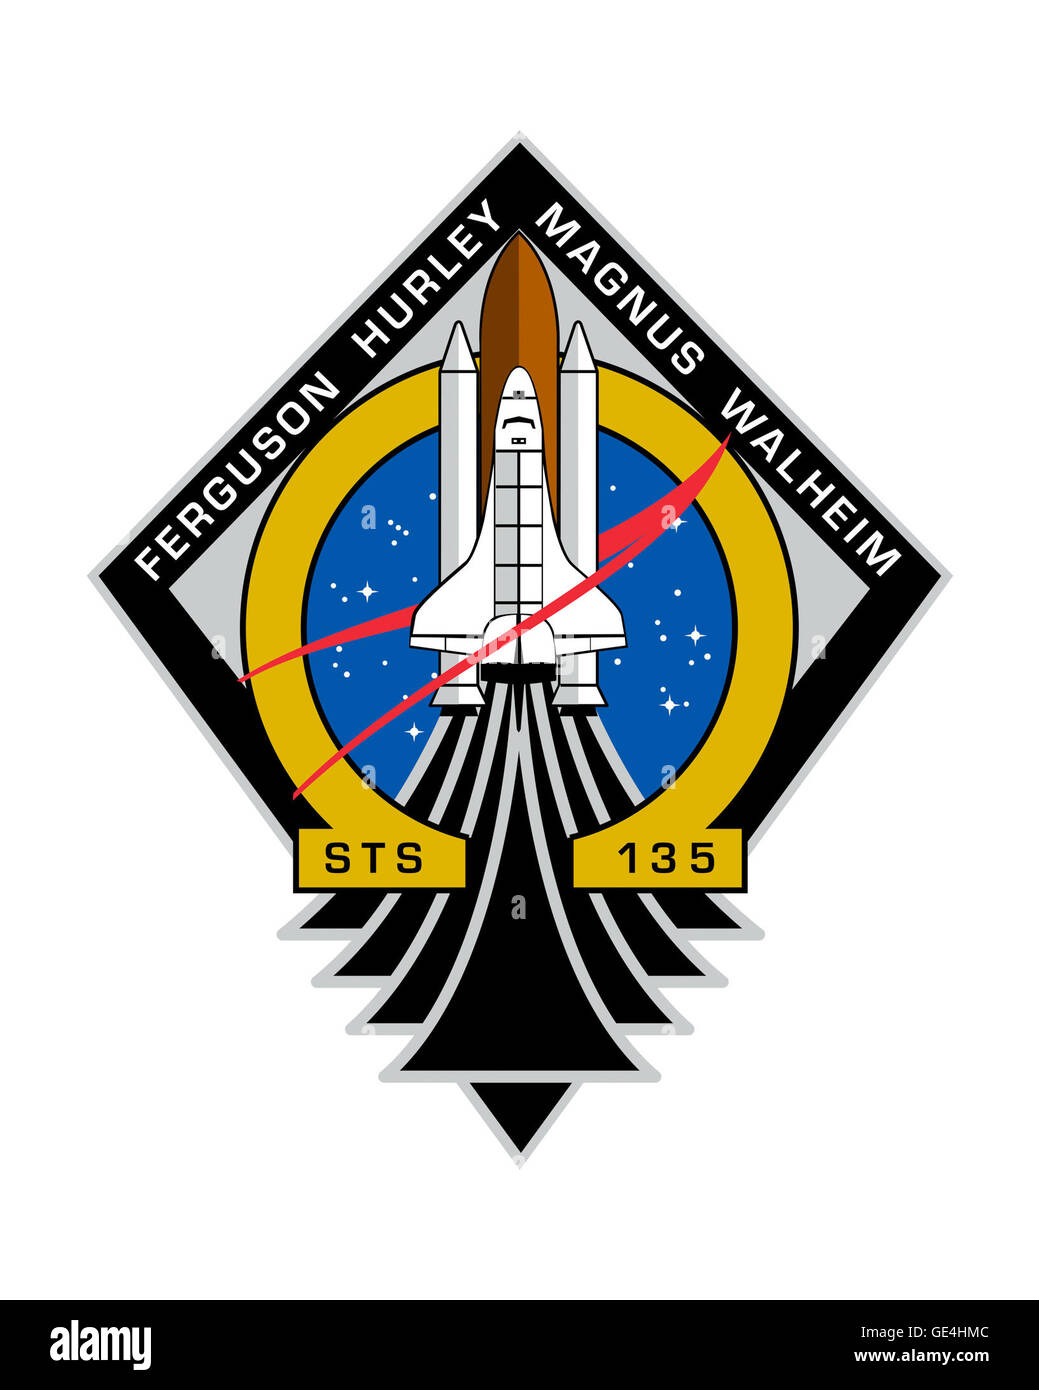 Lanzamiento: 8 de julio de 2011, 11:29 am EDT Desembarque: Julio 21, 2011, 5:57 am EDT, el Centro Espacial Kennedy: La tripulación del Transbordador Espacial Atlantis: Chris Ferguson, el piloto Doug Hurley, especialistas de misión Rex Walheim y Sandy Mangus. Durante la STS-135, el transbordador espacial Atlantis llevó el módulo logístico multipropósito Raffaello para entregar suministros, logística y piezas de repuesto para la Estación Espacial Internacional. La misión también voló un sistema para investigar las posibilidades de reabastecimiento robóticamente nave existente y devolvió un error del módulo de la bomba de amoniaco de la NASA ayuda a comprender mejor el mecanismo de falla y mejorar pu Foto de stock